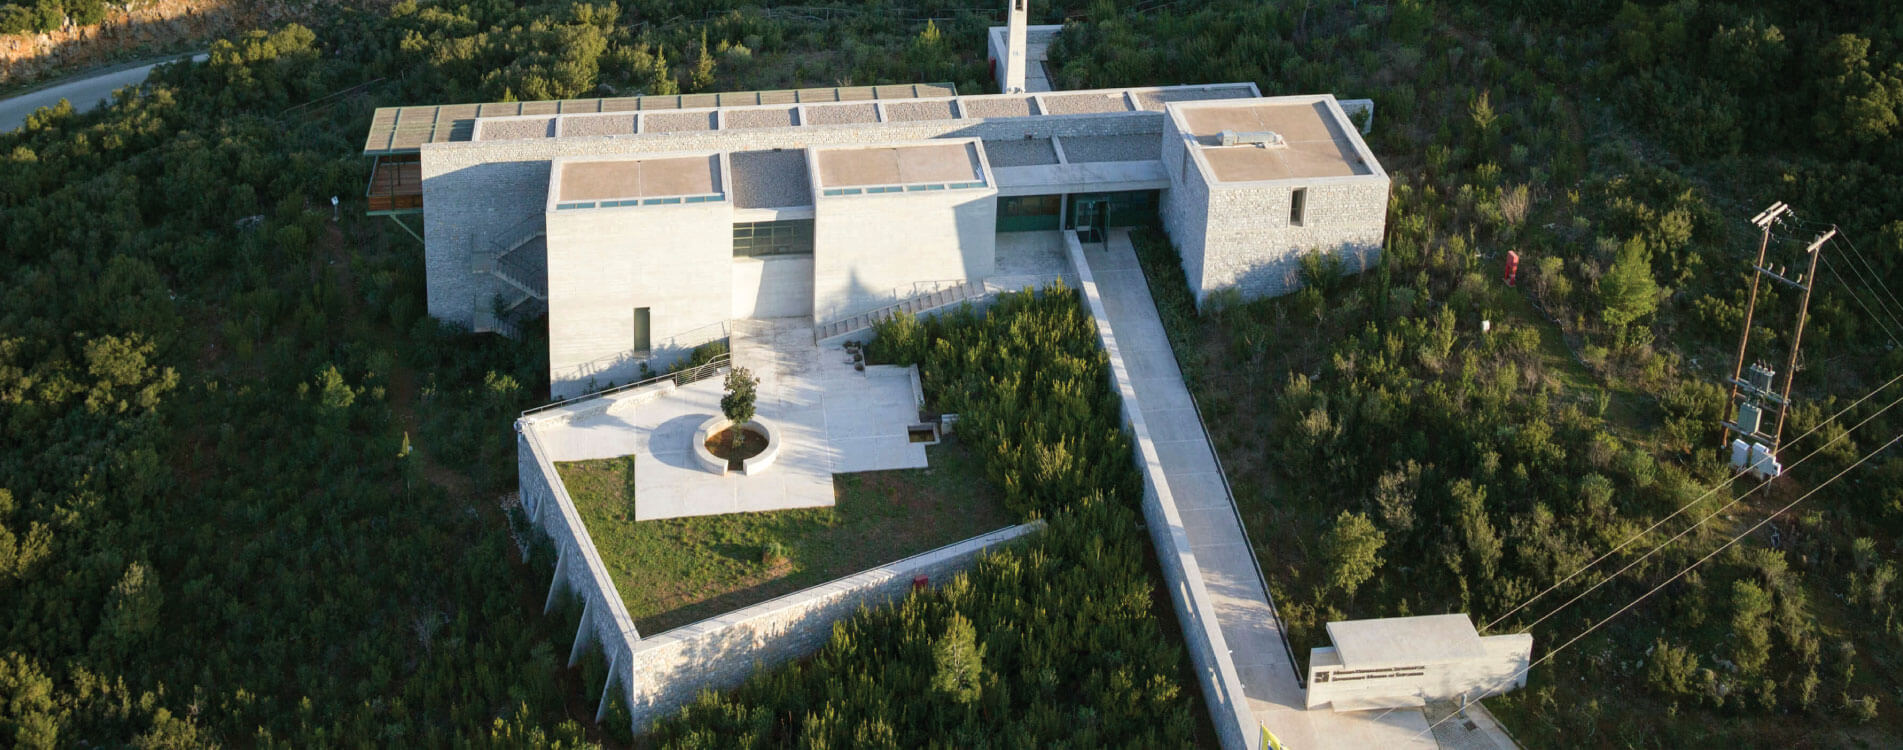 Μουσείο Περιβάλλοντος Στυμφαλίας | Piraeus Bank Blog